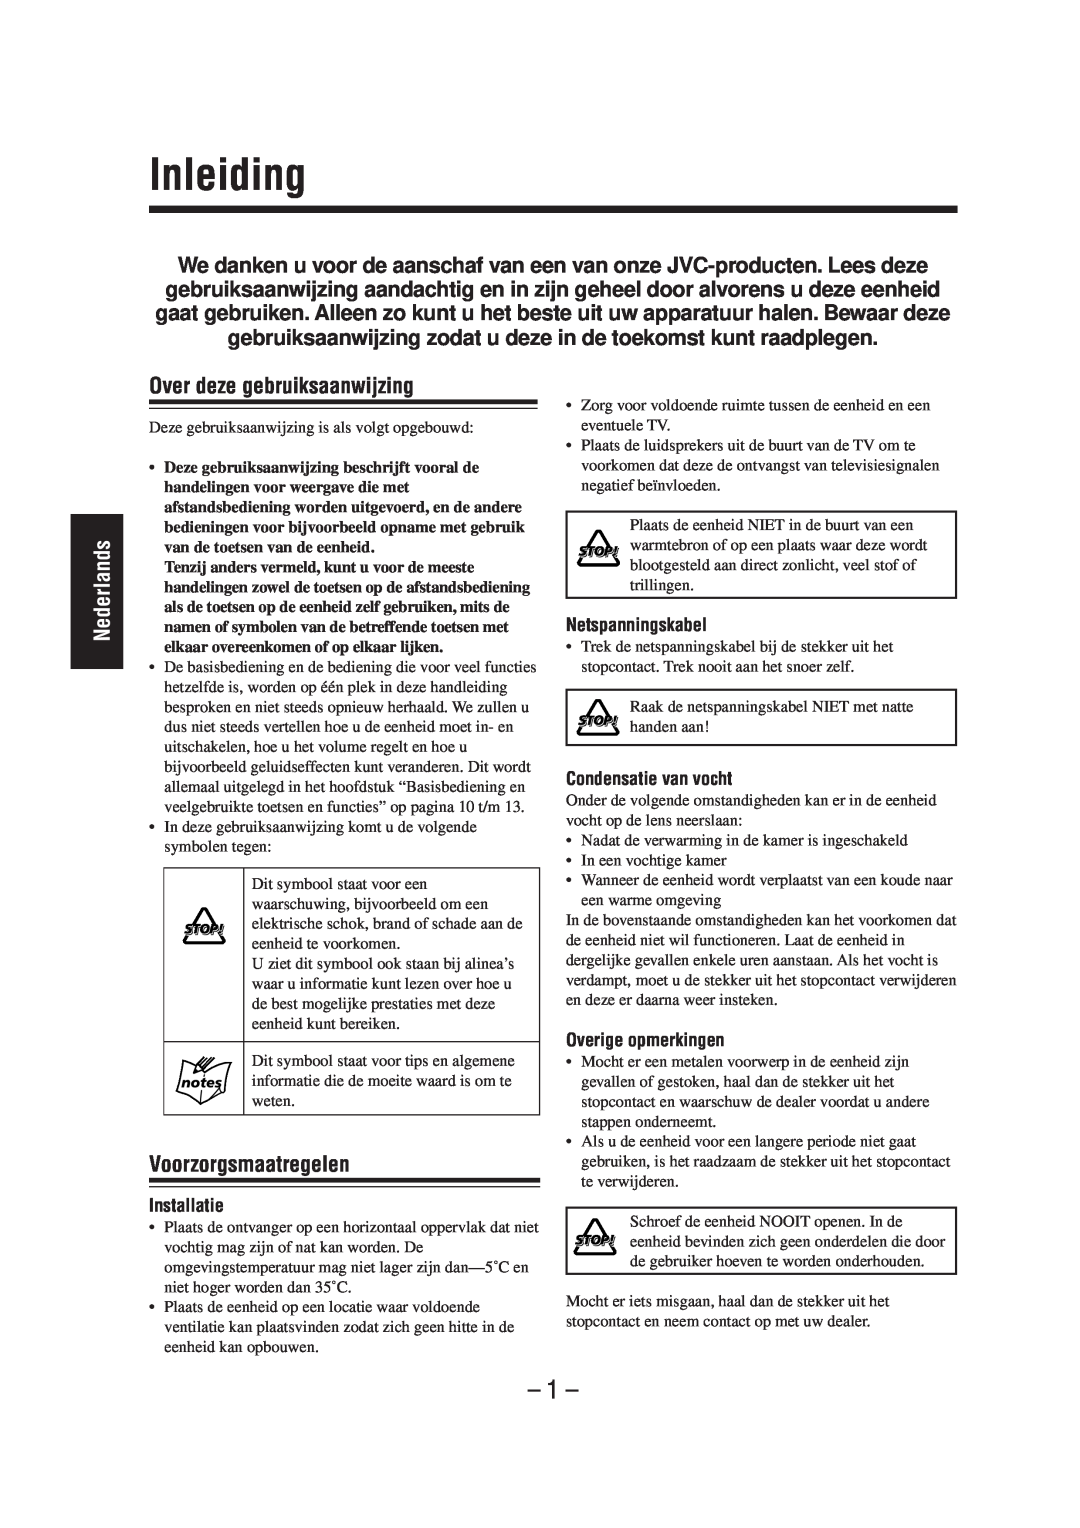 JVC UX-A52R Inleiding, Nederlands, Over deze gebruiksaanwijzing, Voorzorgsmaatregelen, Netspanningskabel, Installatie 